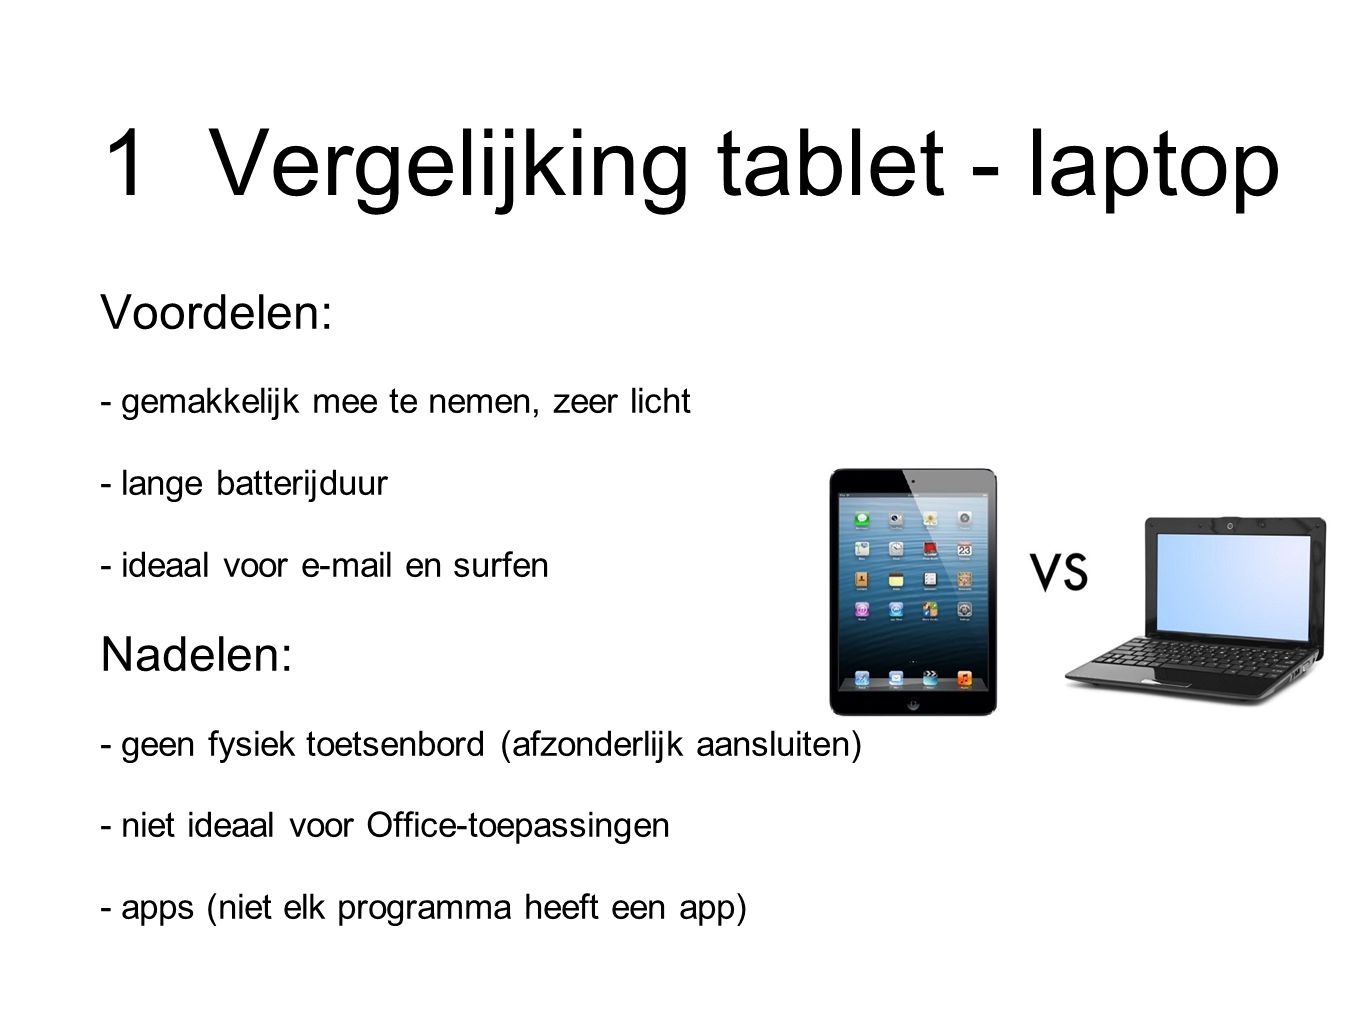 1 Vergelijking tablet - laptop Voordelen: - gemakkelijk mee te nemen, zeer licht - lange batterijduur - ideaal voor  en surfen Nadelen: - geen fysiek toetsenbord (afzonderlijk aansluiten) - niet ideaal voor Office-toepassingen - apps (niet elk programma heeft een app)